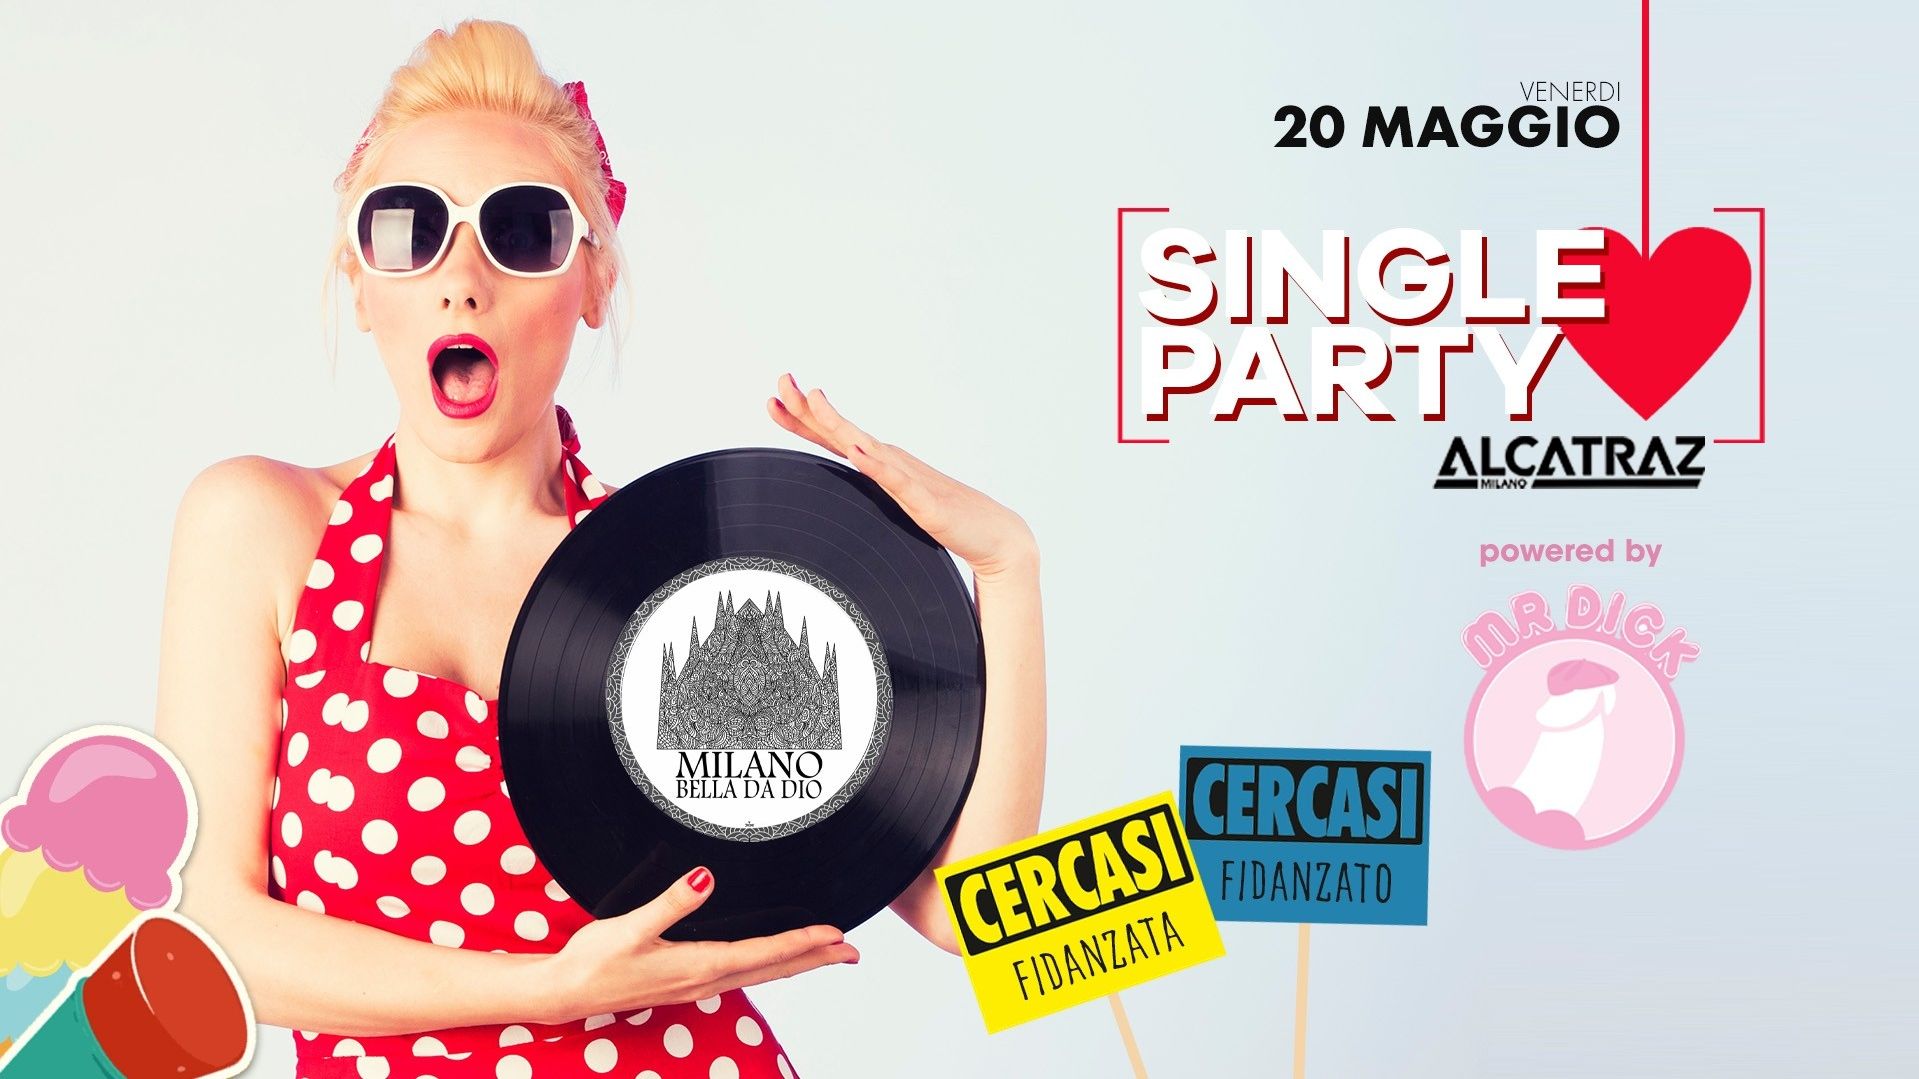 Single Party + MilanobelladaDio